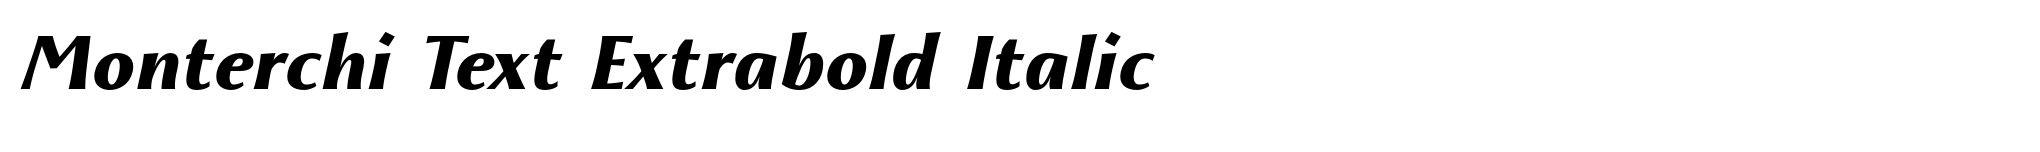 Monterchi Text Extrabold Italic image